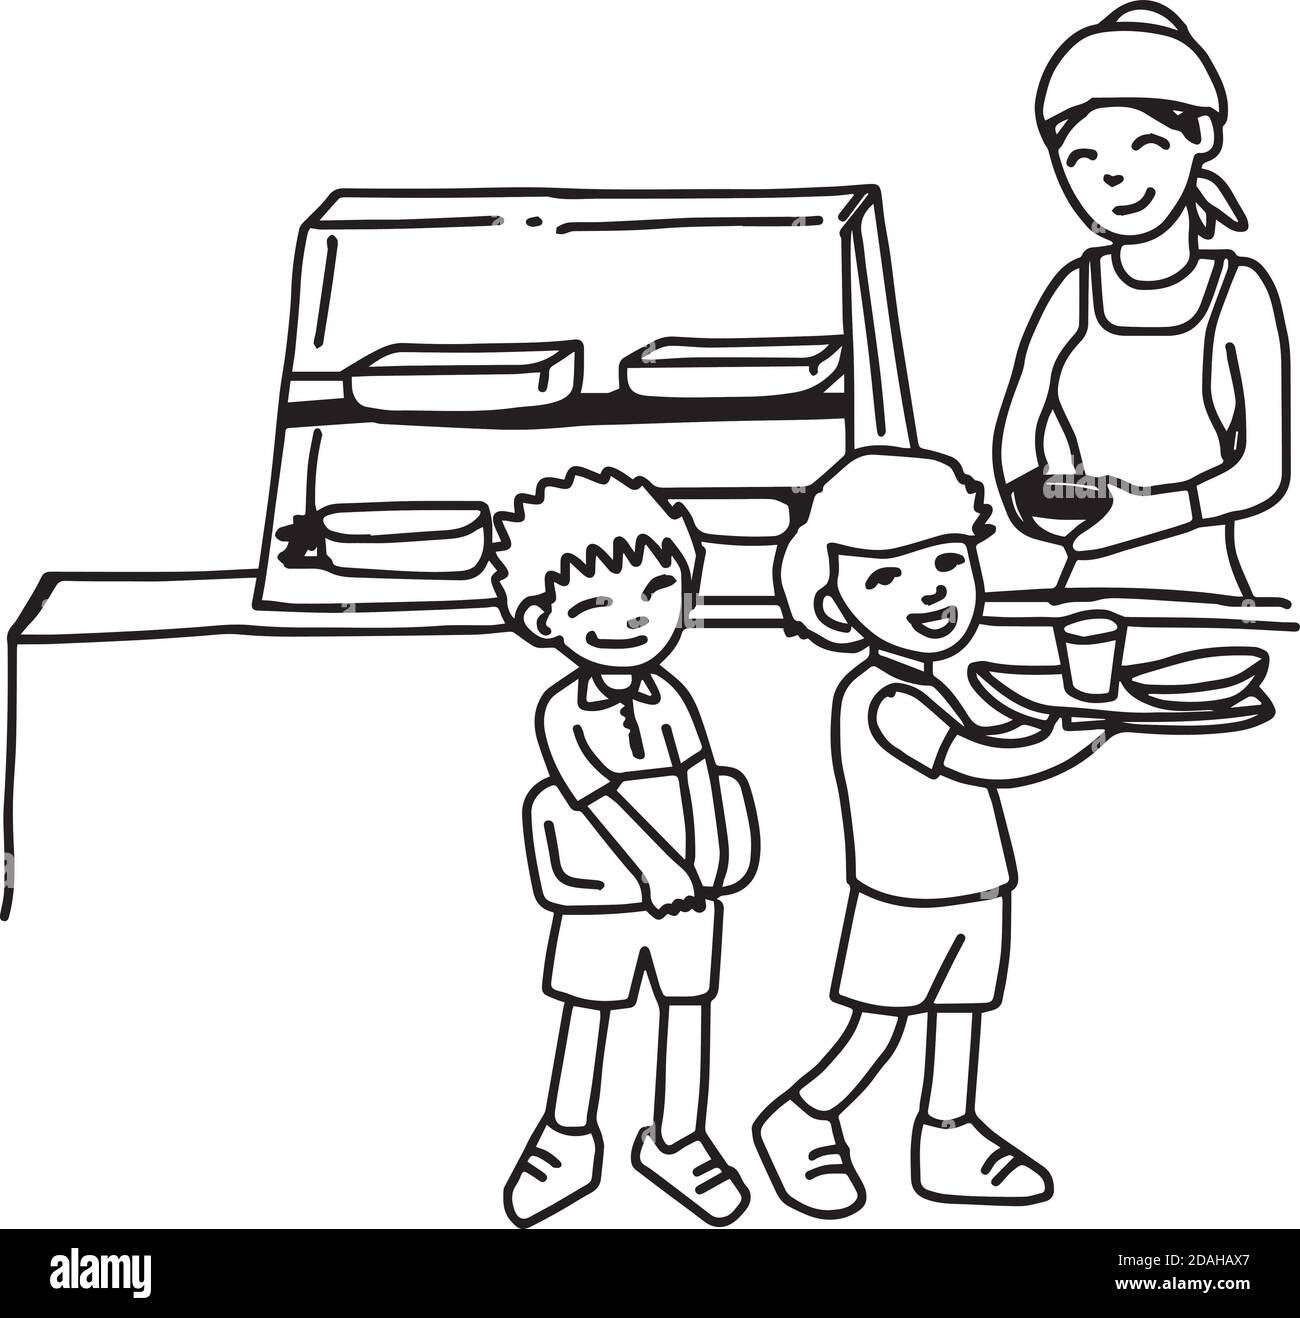 Comedor escolar Imágenes de stock en blanco y negro - Alamy